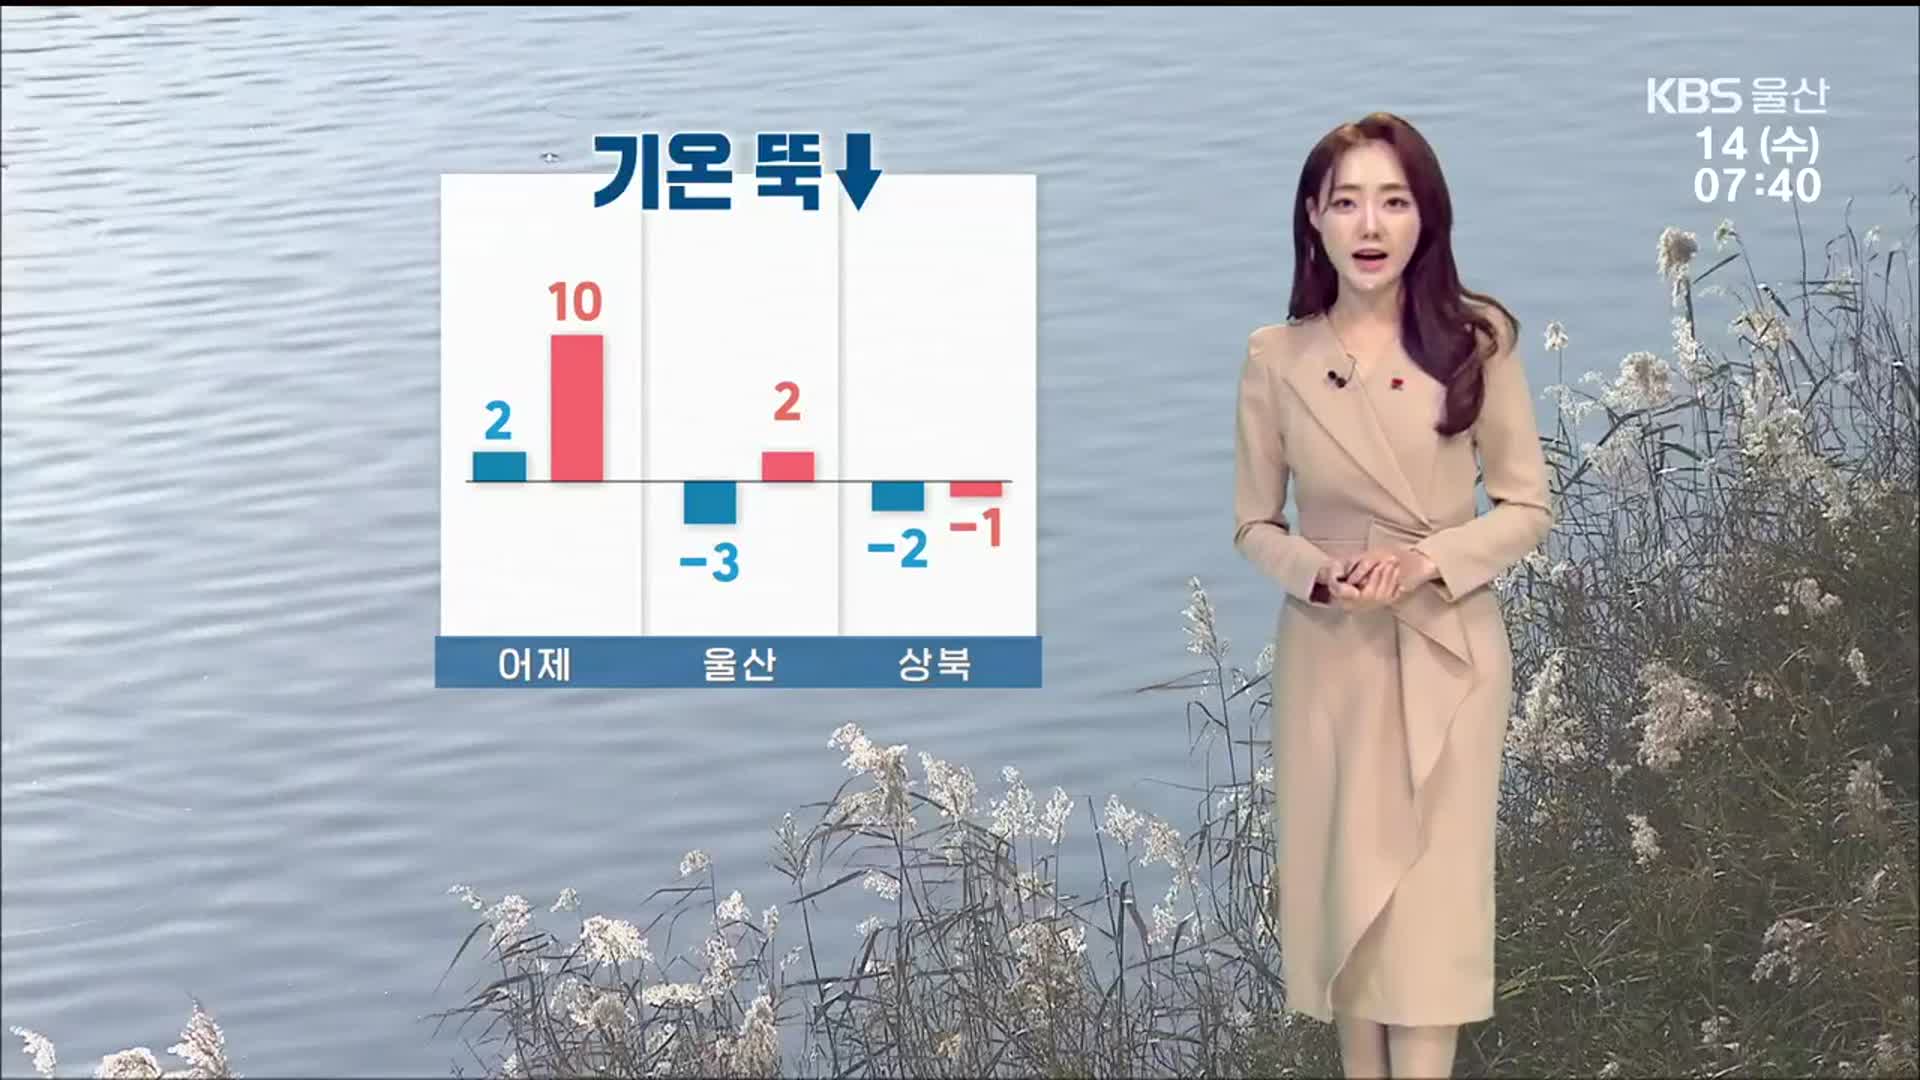 [날씨] ‘울산 -3도’ 출근길 영하권 추위…강풍에 체감 ↓